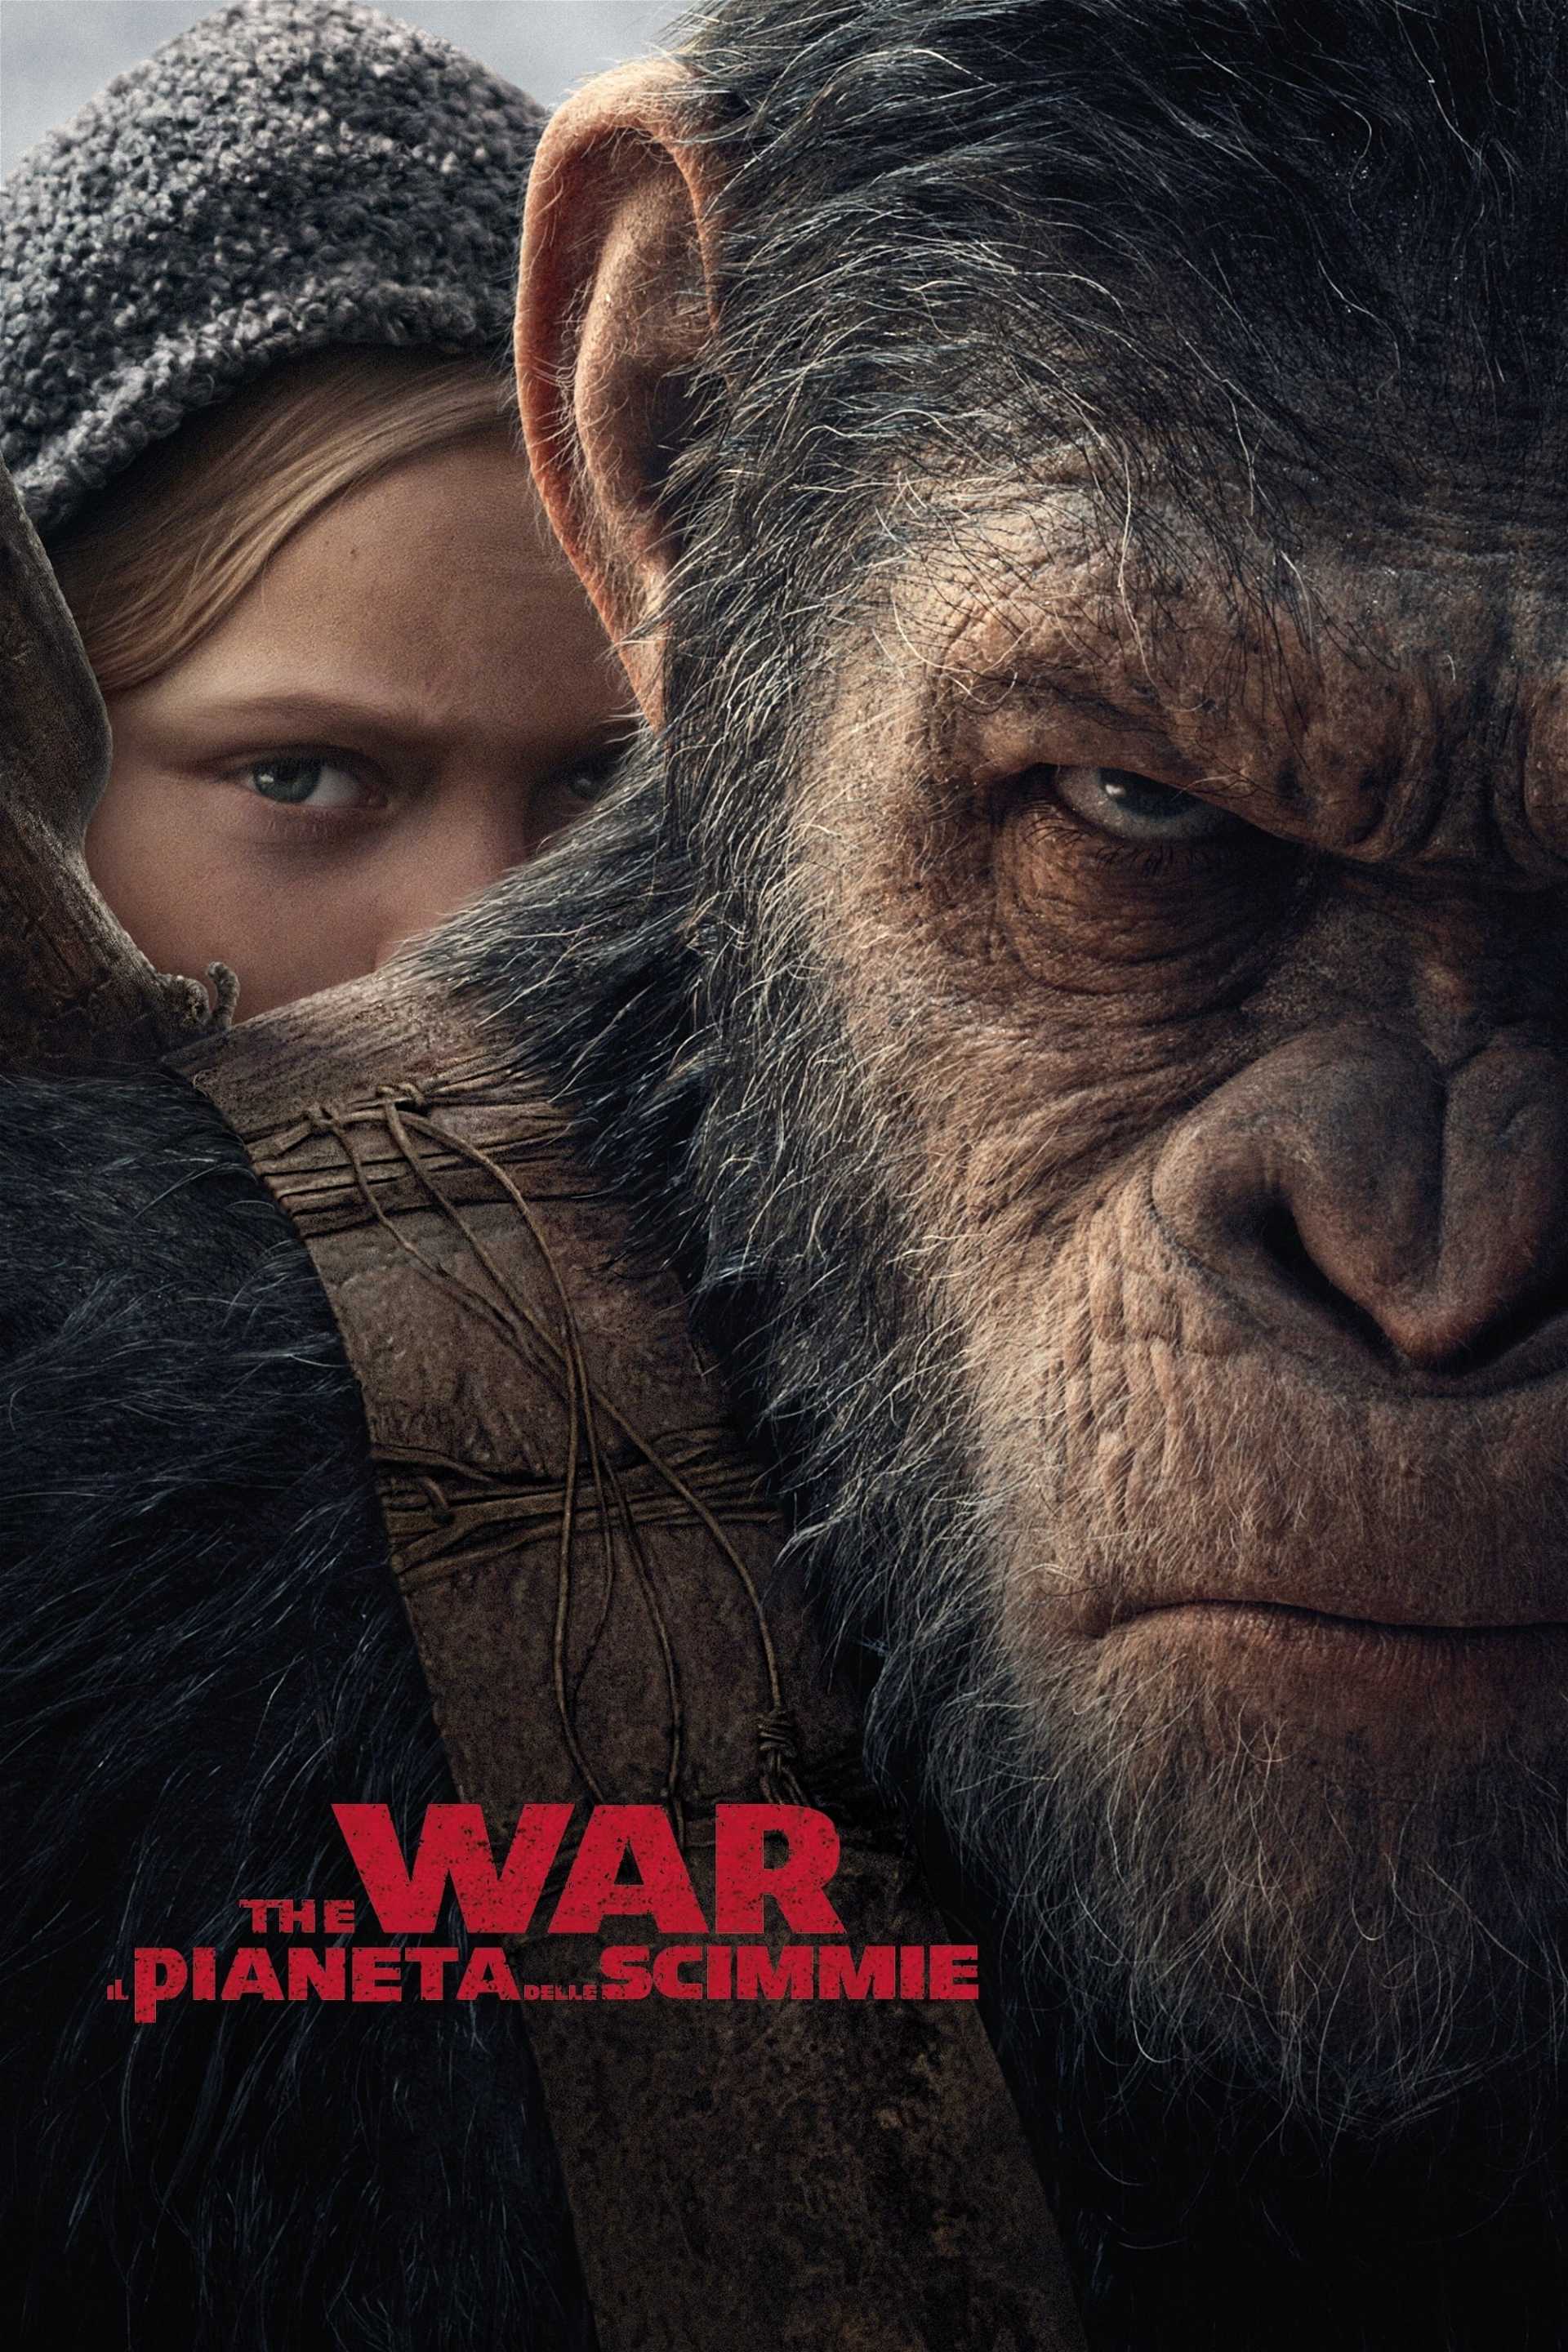 The War - Il pianeta delle scimmie in streaming